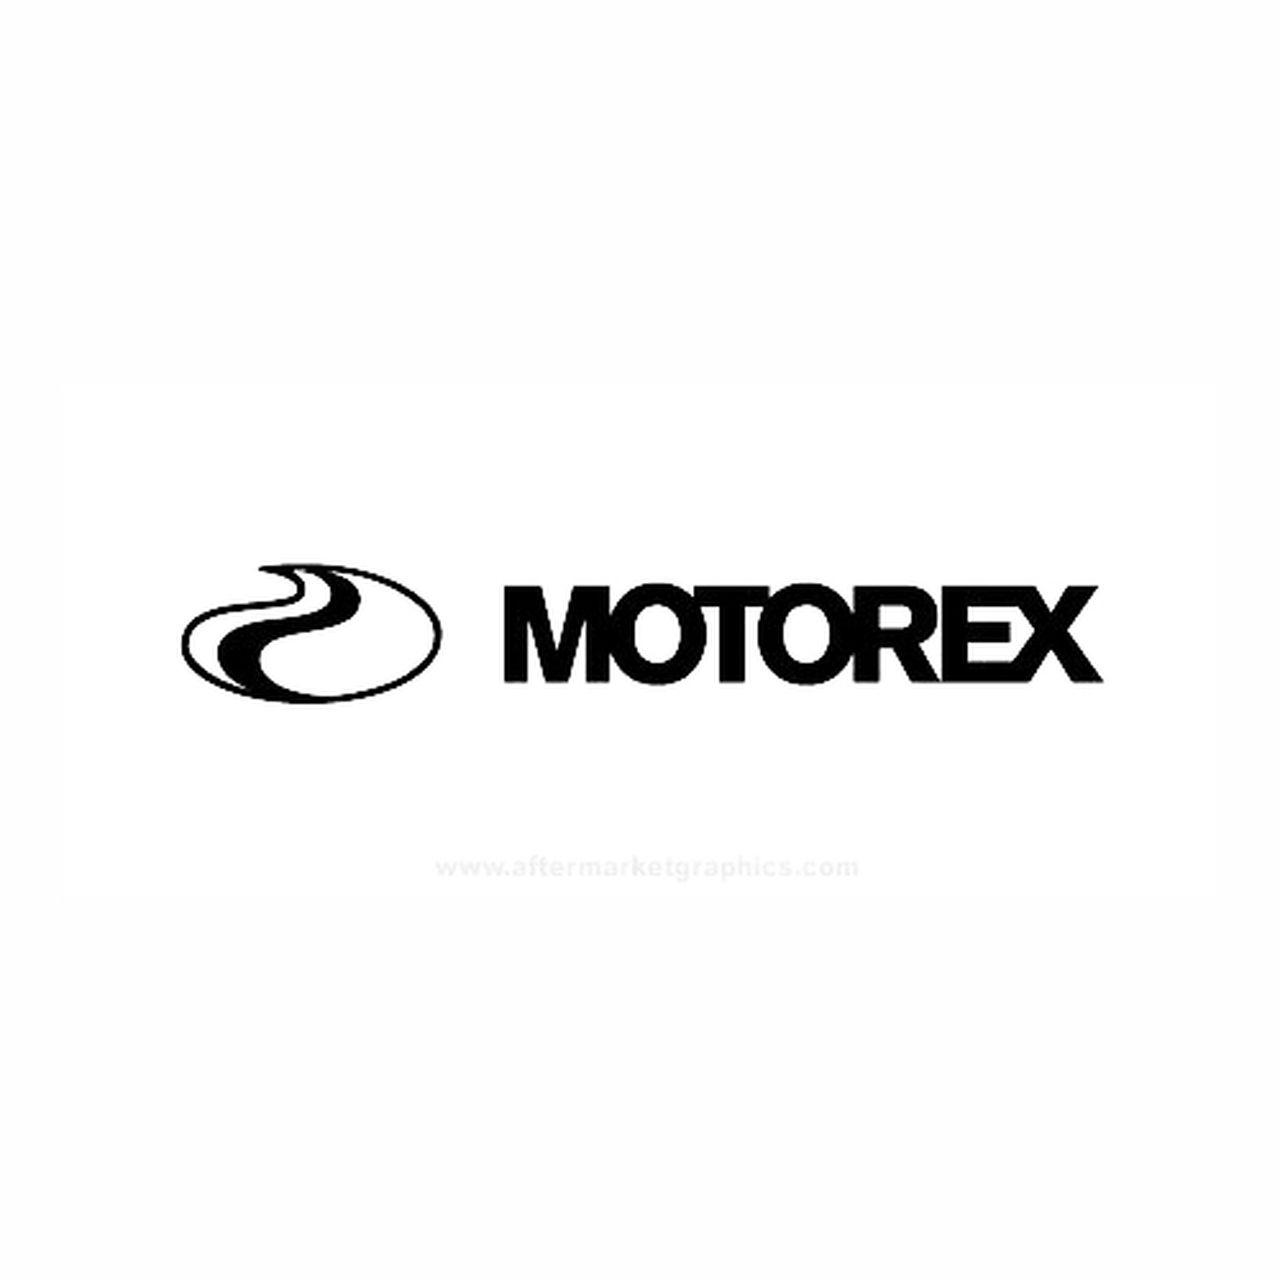 Motorex Logo - Motorex Oil Motorcycle Vinyl Decal Set